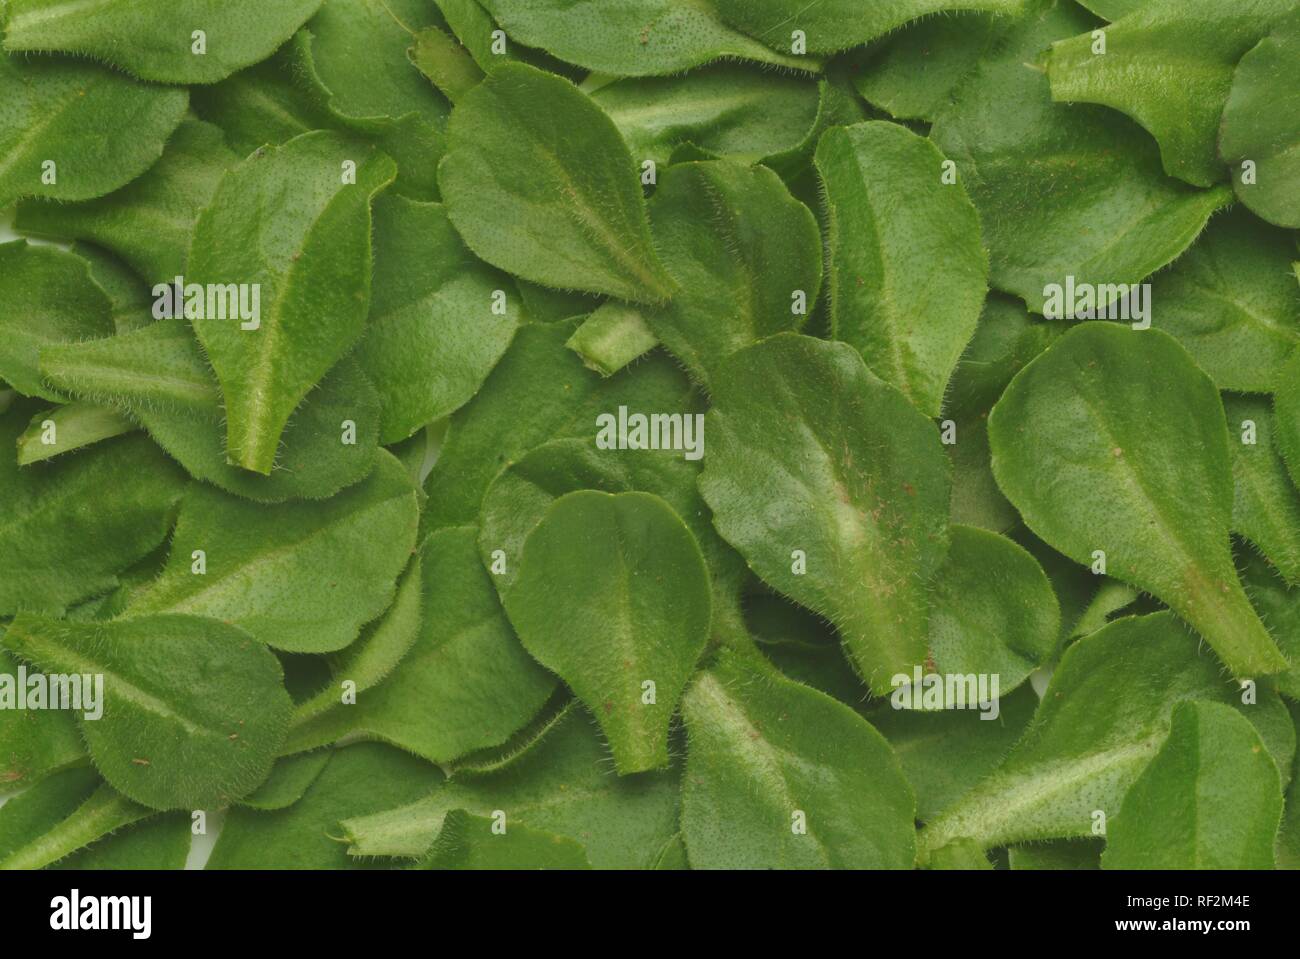 Gemeinsame Daisy, Daisy oder Englisch Gänseblümchen (Bellis perennis), Heilpflanzen Stockfoto